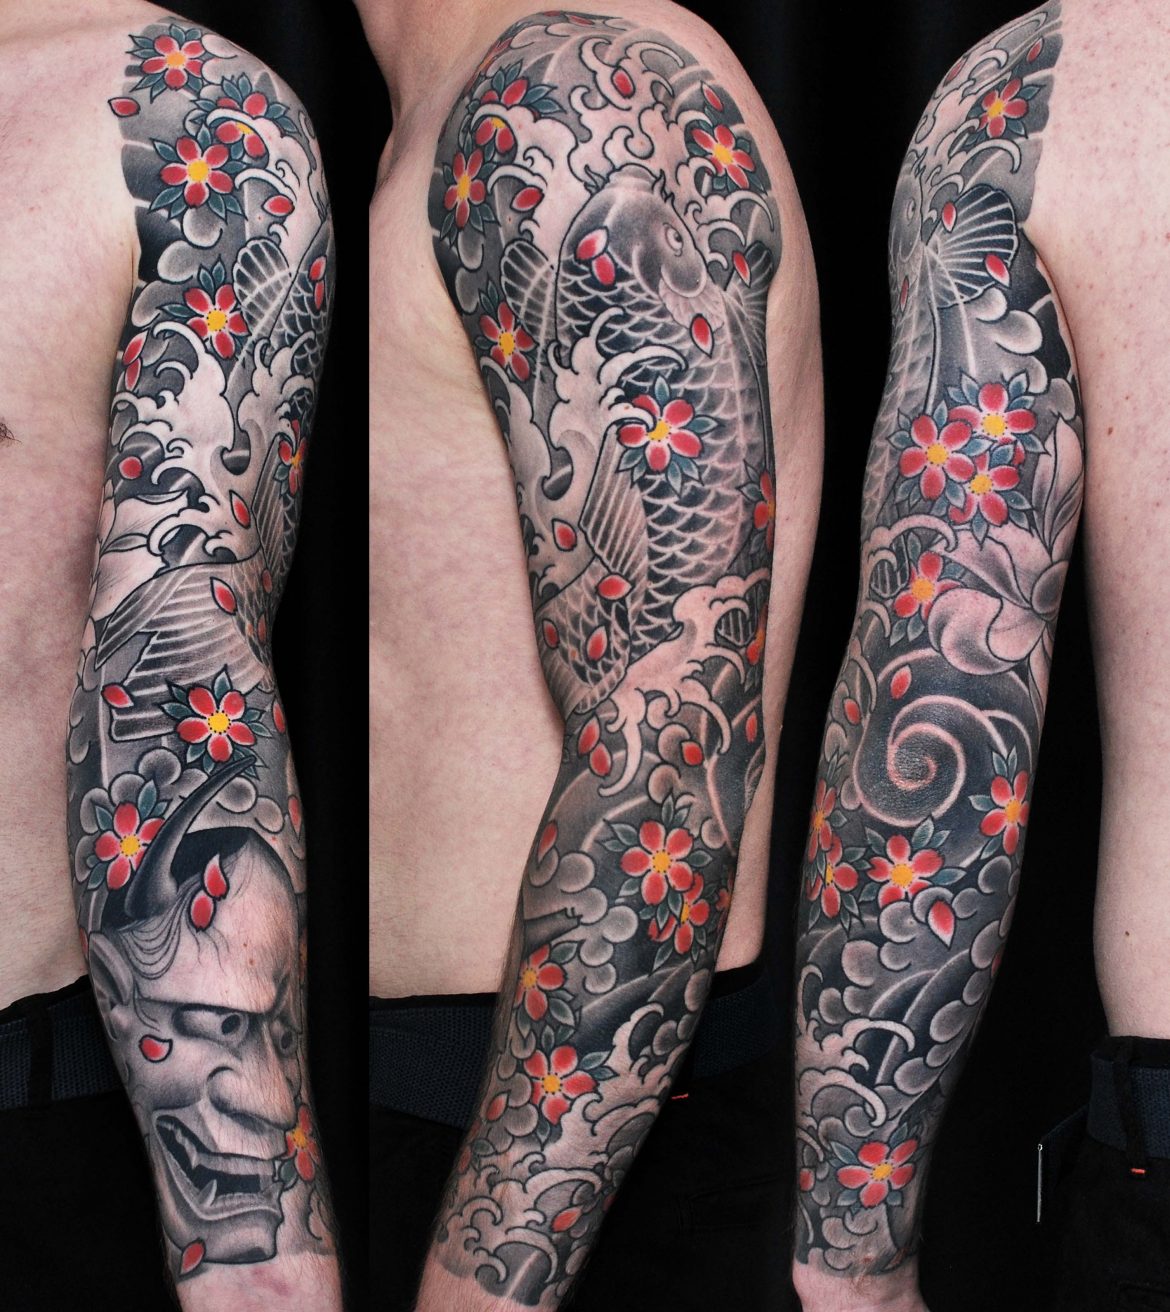 uldispaulins-tattoo-sleeve-koi